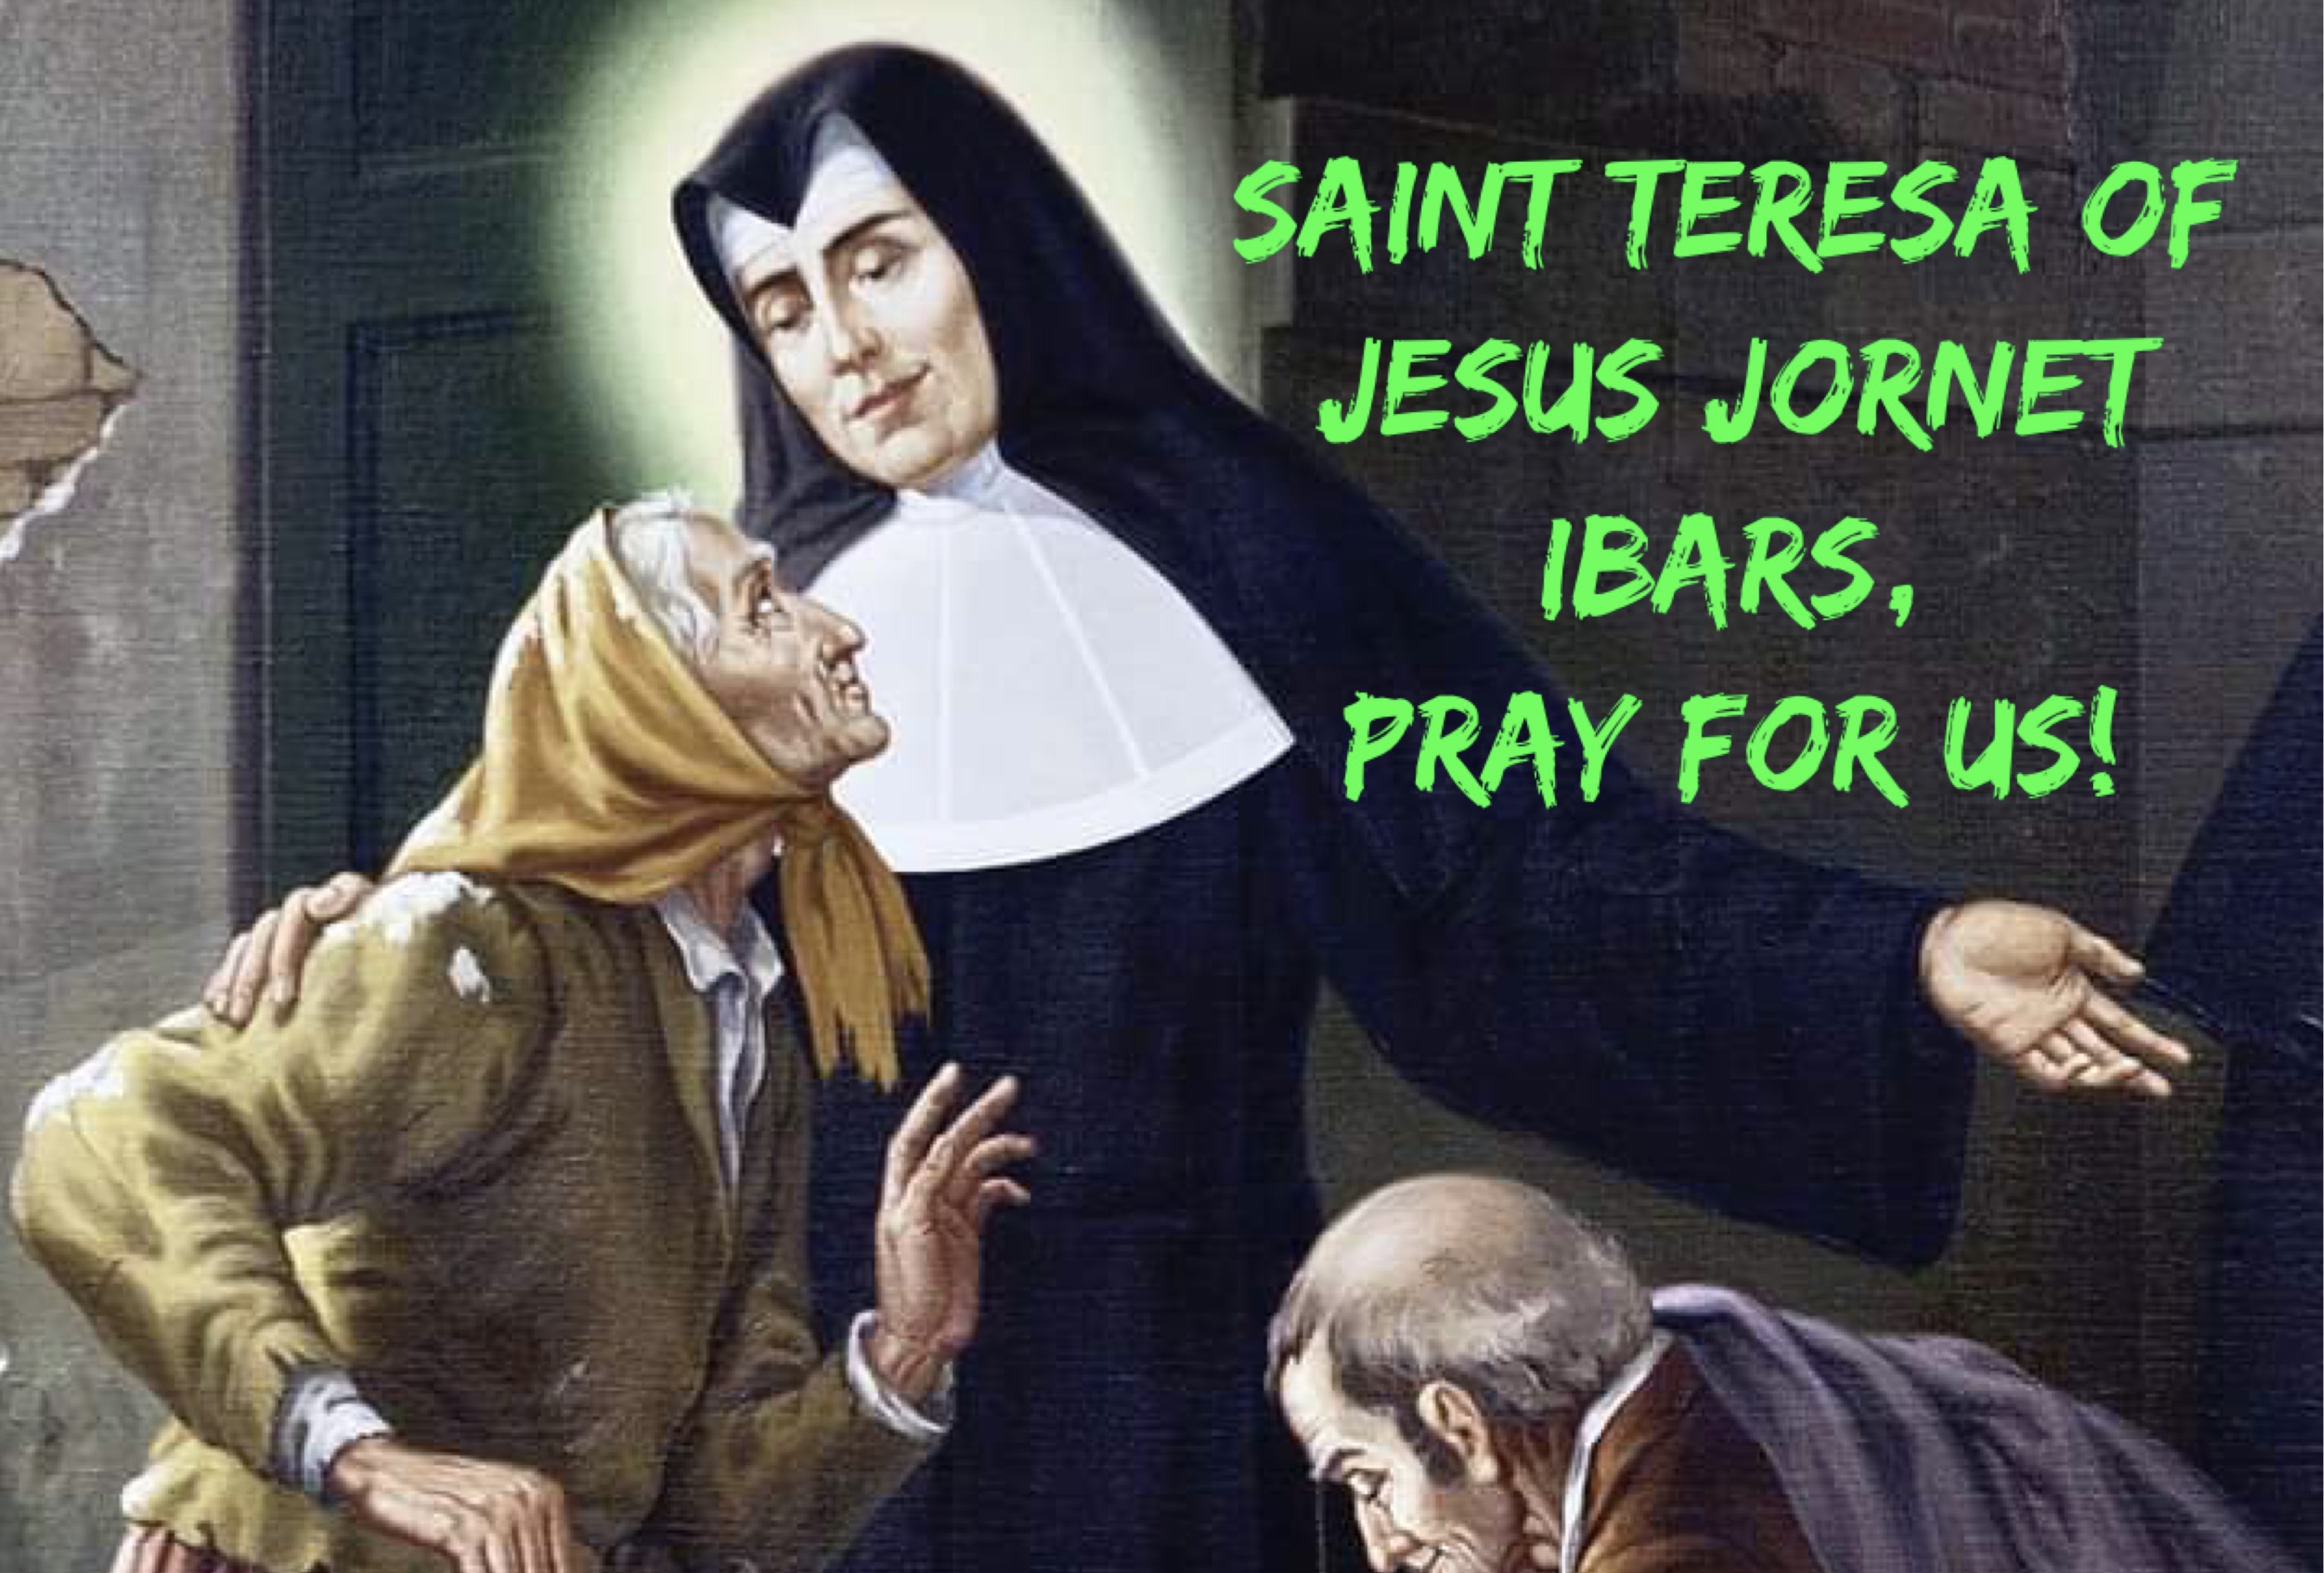 26th August - Saint Teresa of Jesus Jornet Ibars